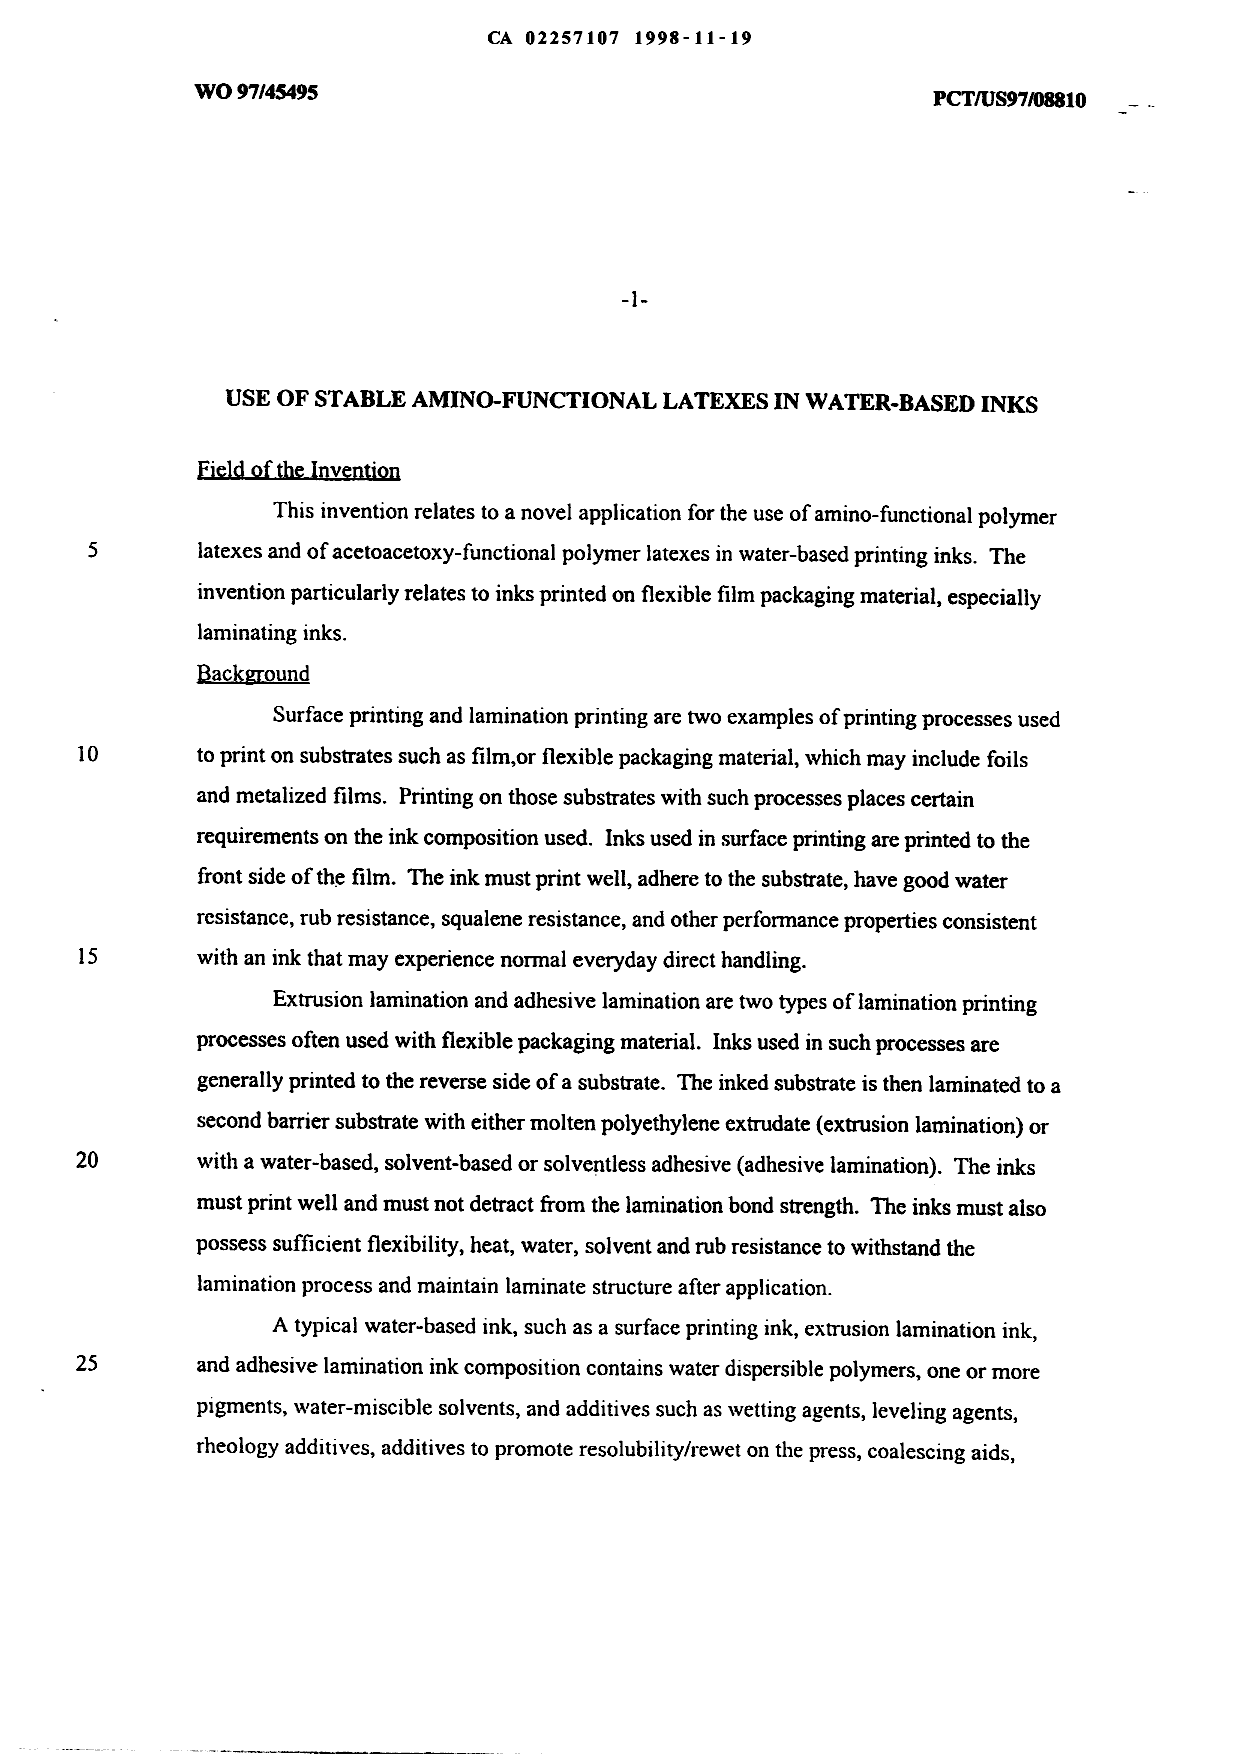 Canadian Patent Document 2257107. Description 19981119. Image 1 of 30